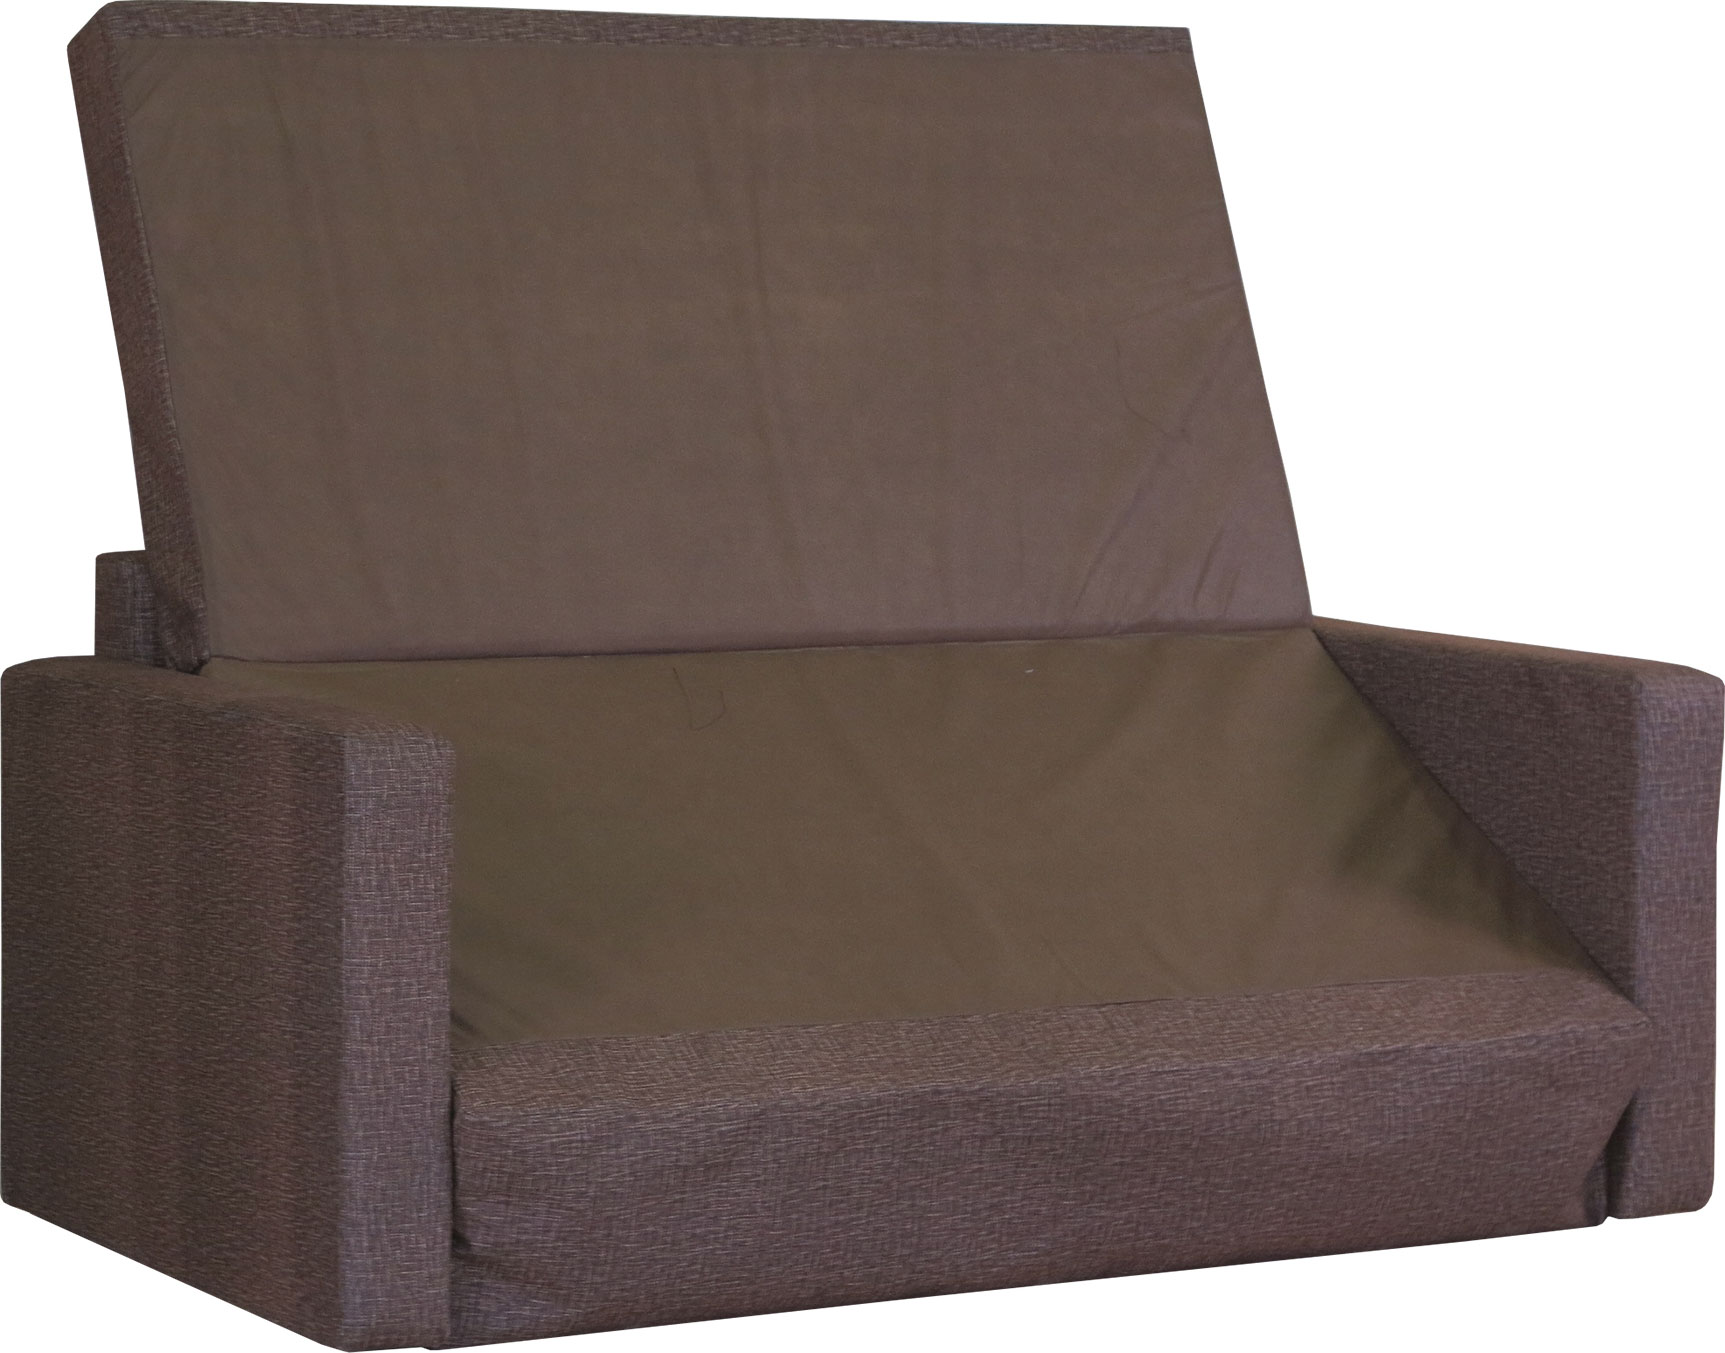 Выкатной диван Бит 2 велюр коричневый